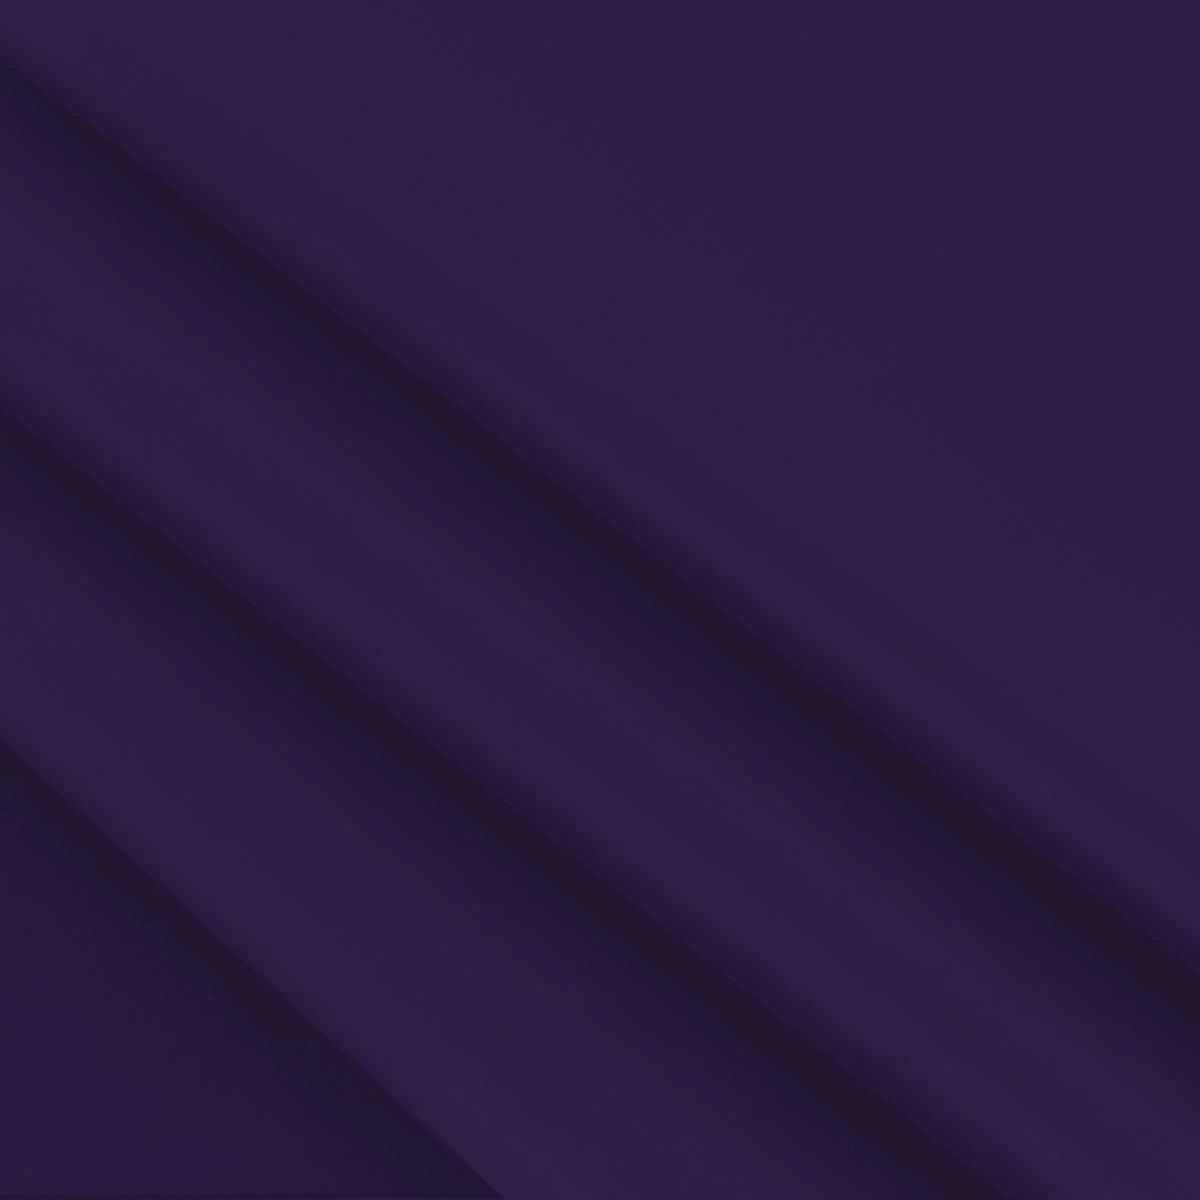 Vloeipapier violet 50 x 70 cm (480 vellen)